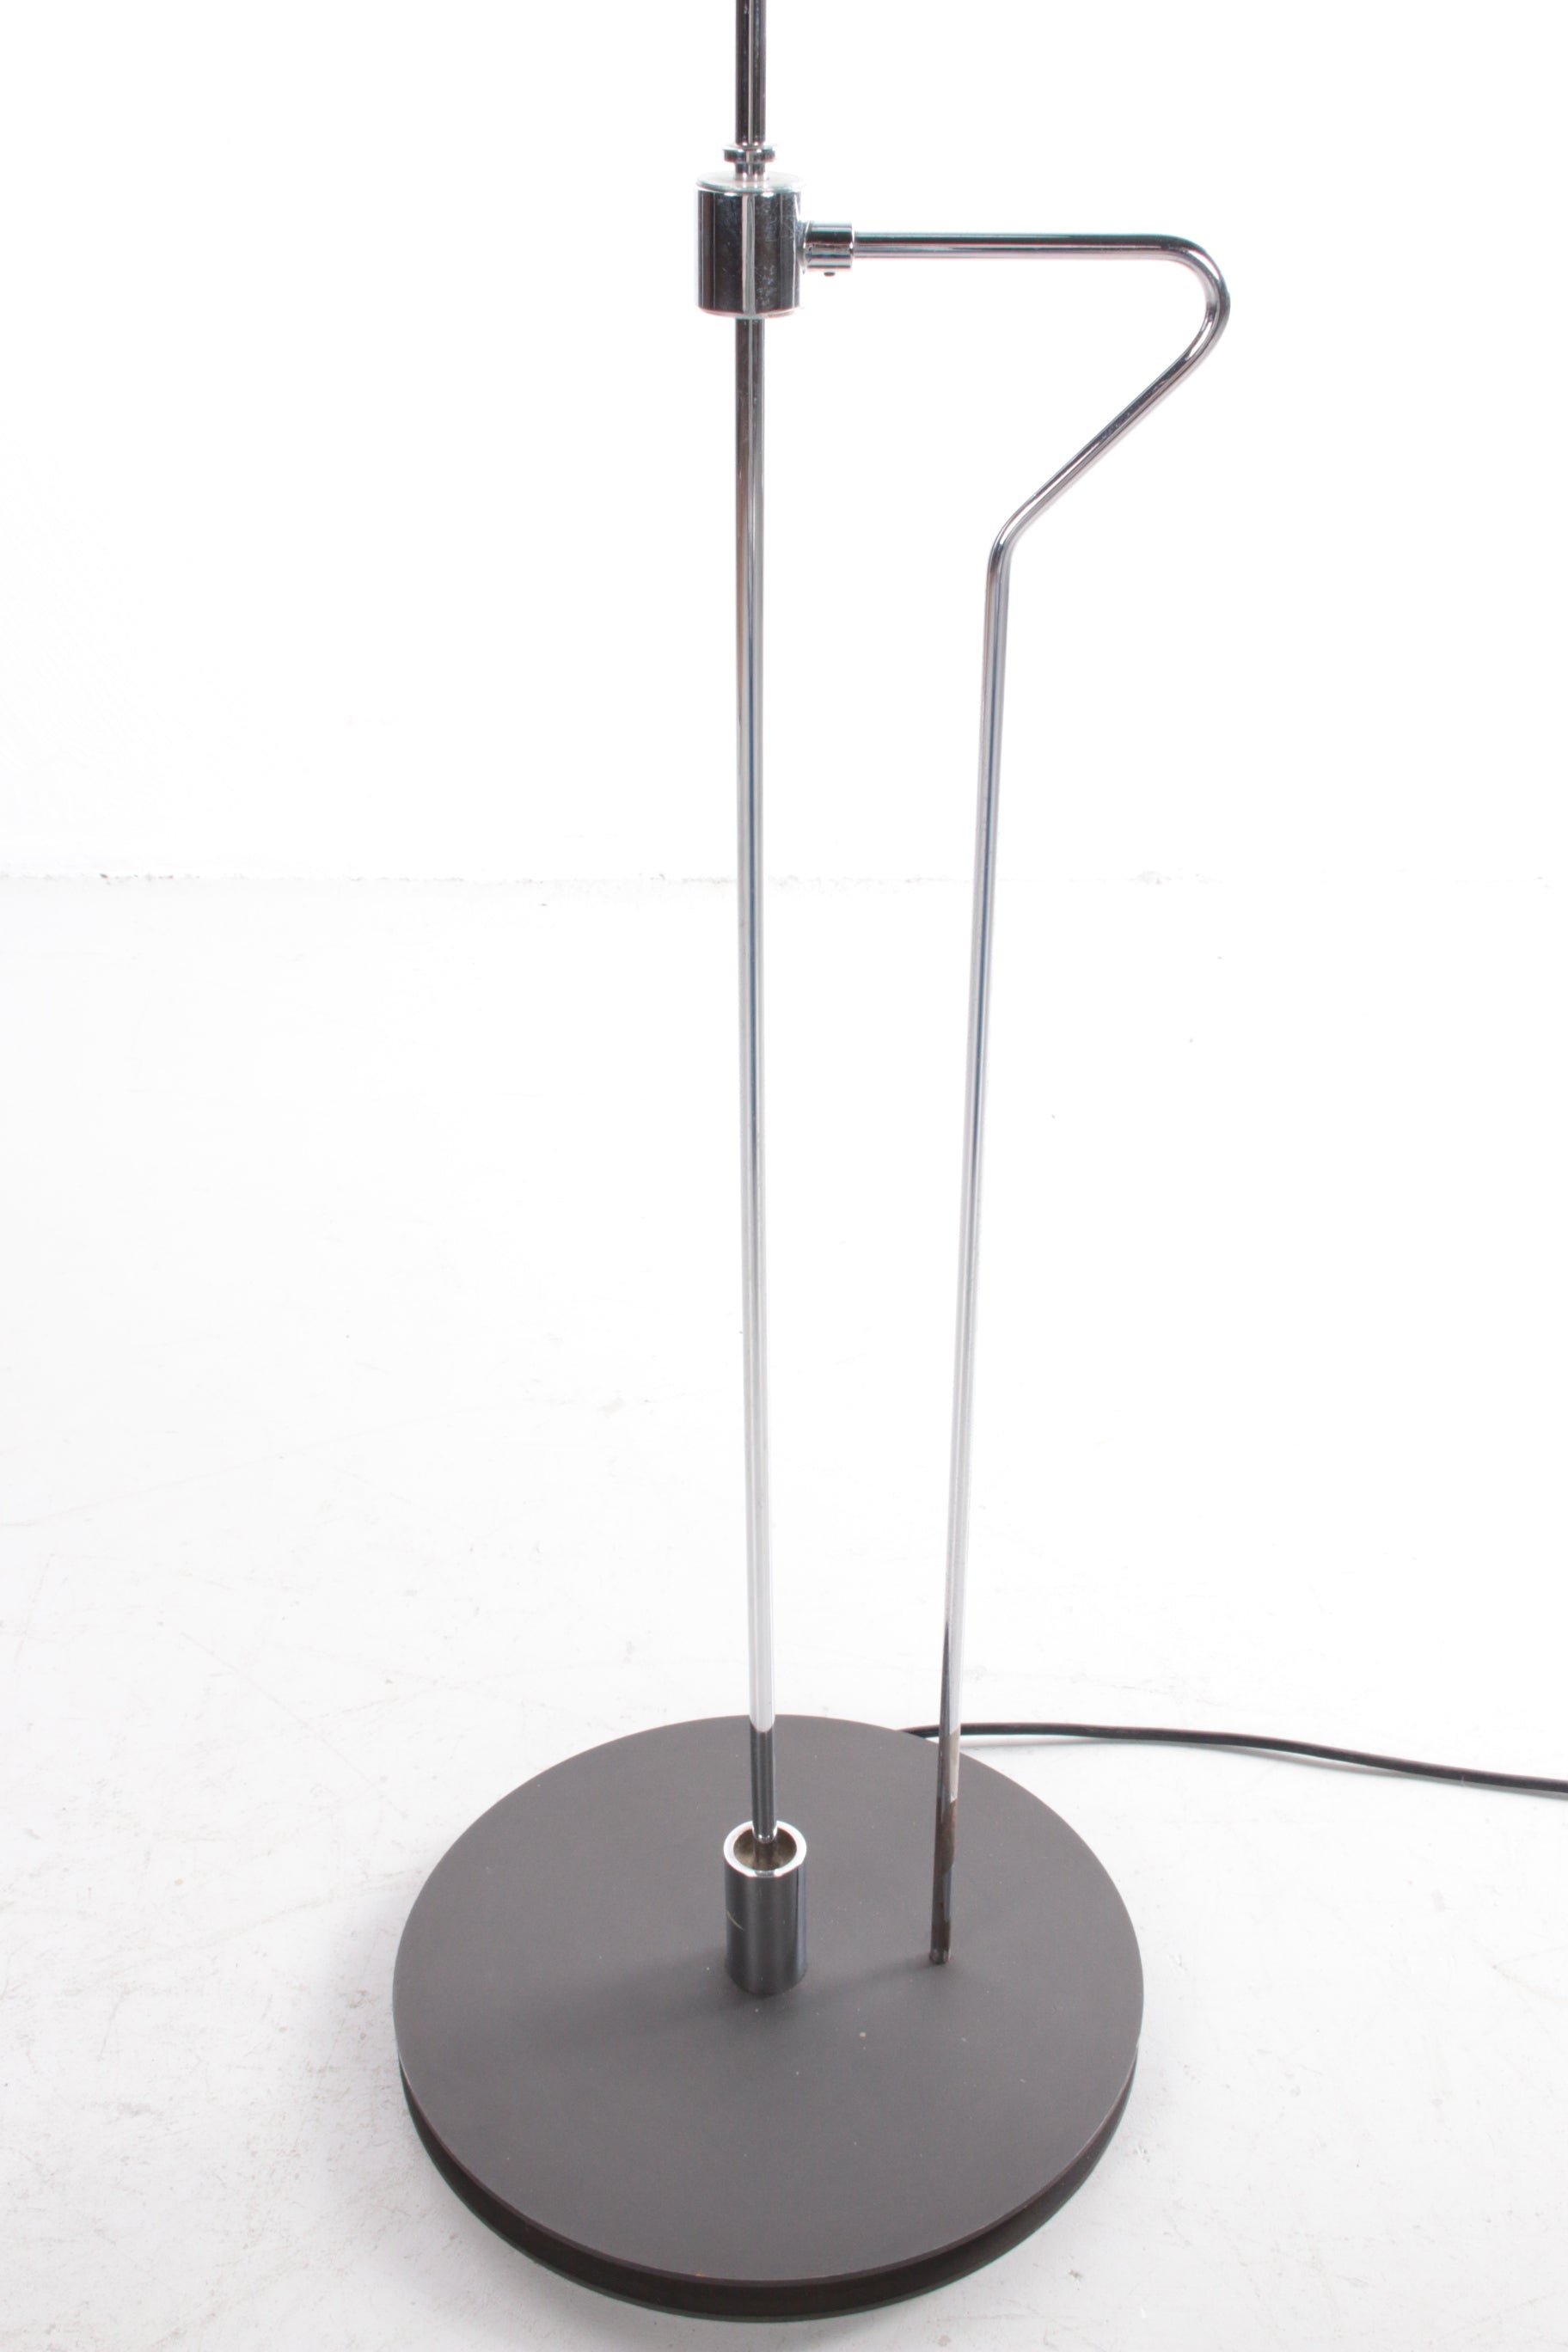 VeArt Vloerlamp Design by Jeannot Cerutti detail voetstuk